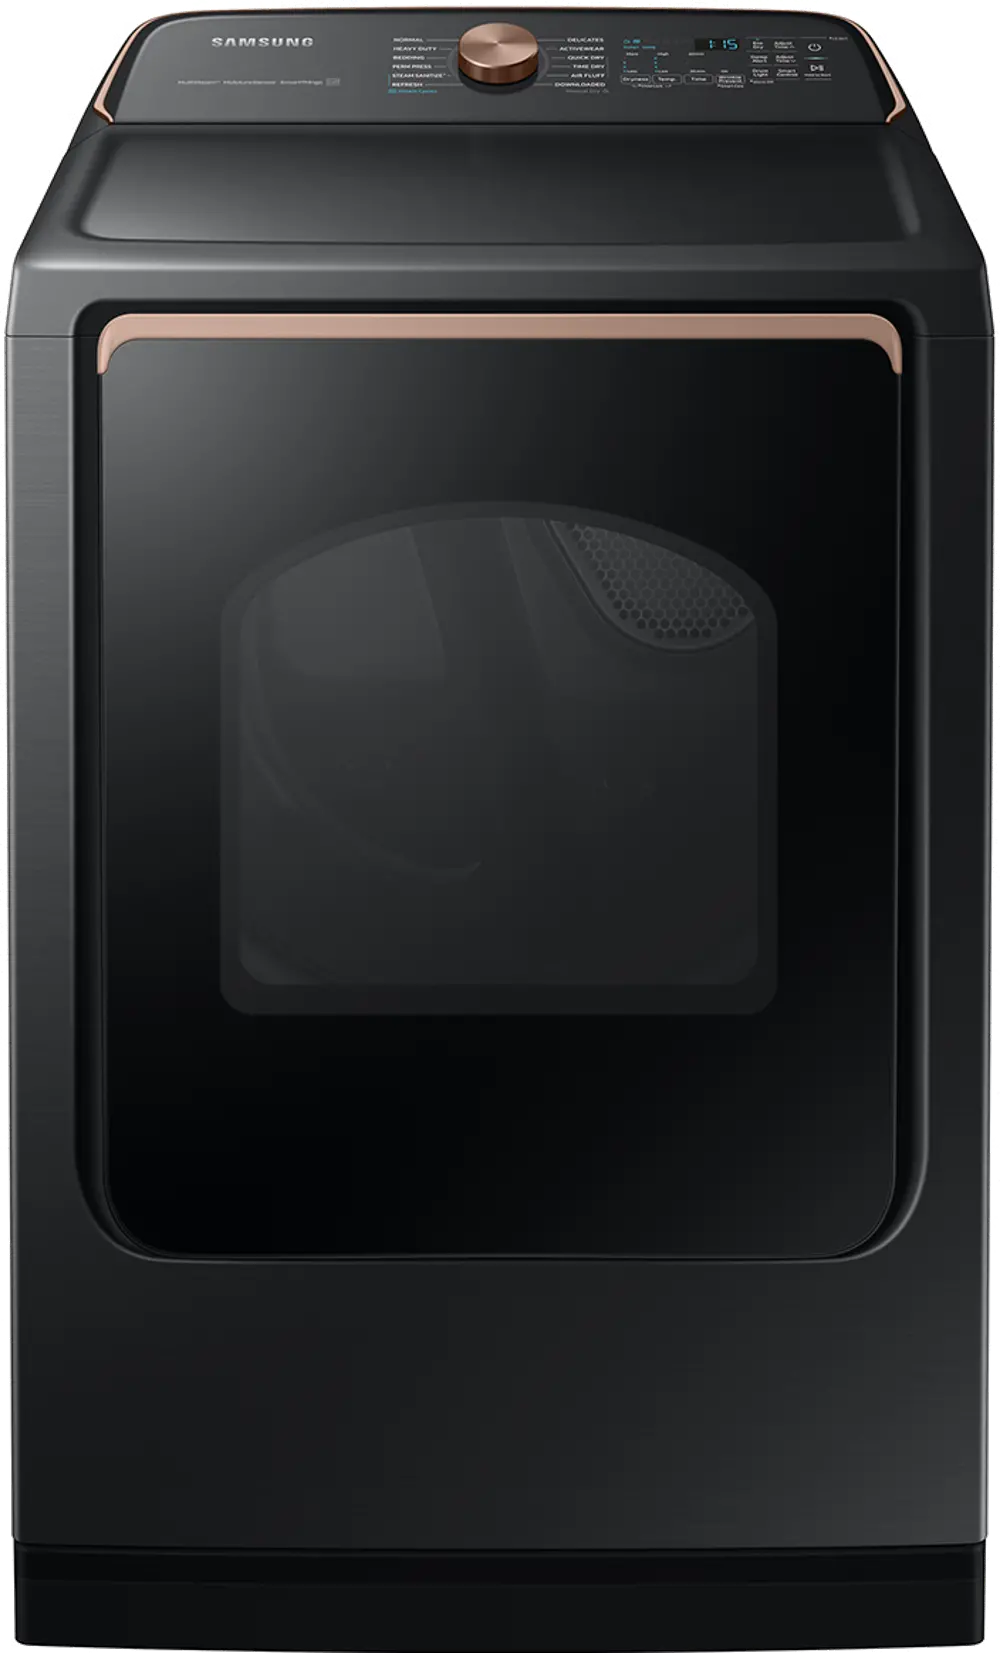 DVE55A7700V Samsung 7.4 Cu Ft Electric Smart Dryer with Steam Sanitize+ - Brushed Black-1